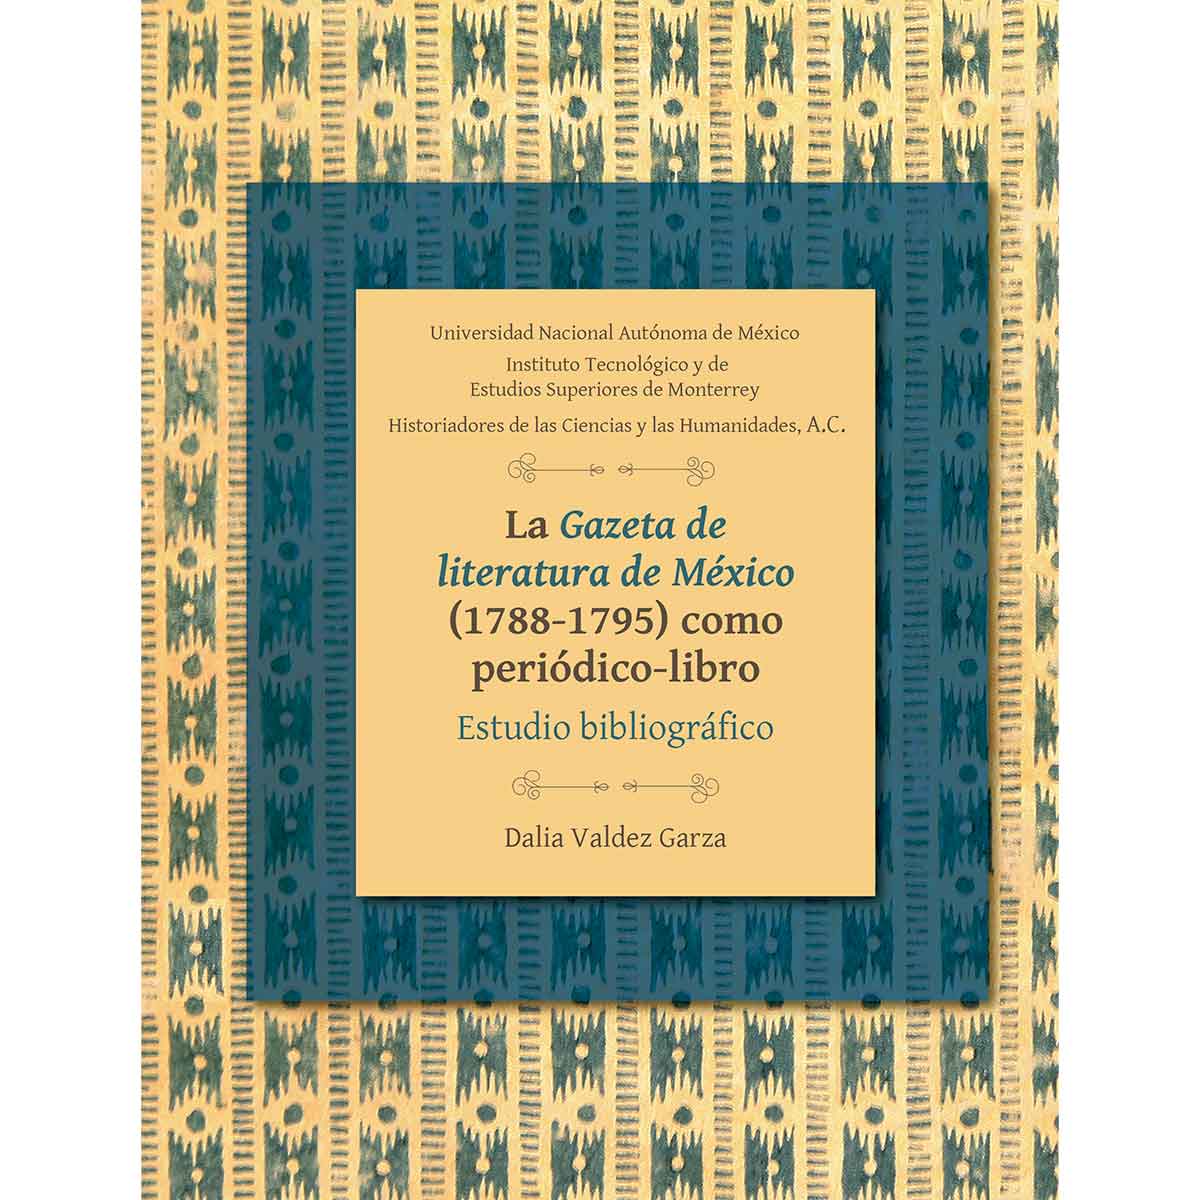 LA GAZETA DE LITERATURA DE MÉXICO (1788-1795) COMO PERIÓDICO-LIBRO. ESTUDIO BIBLIOGRÁFICO